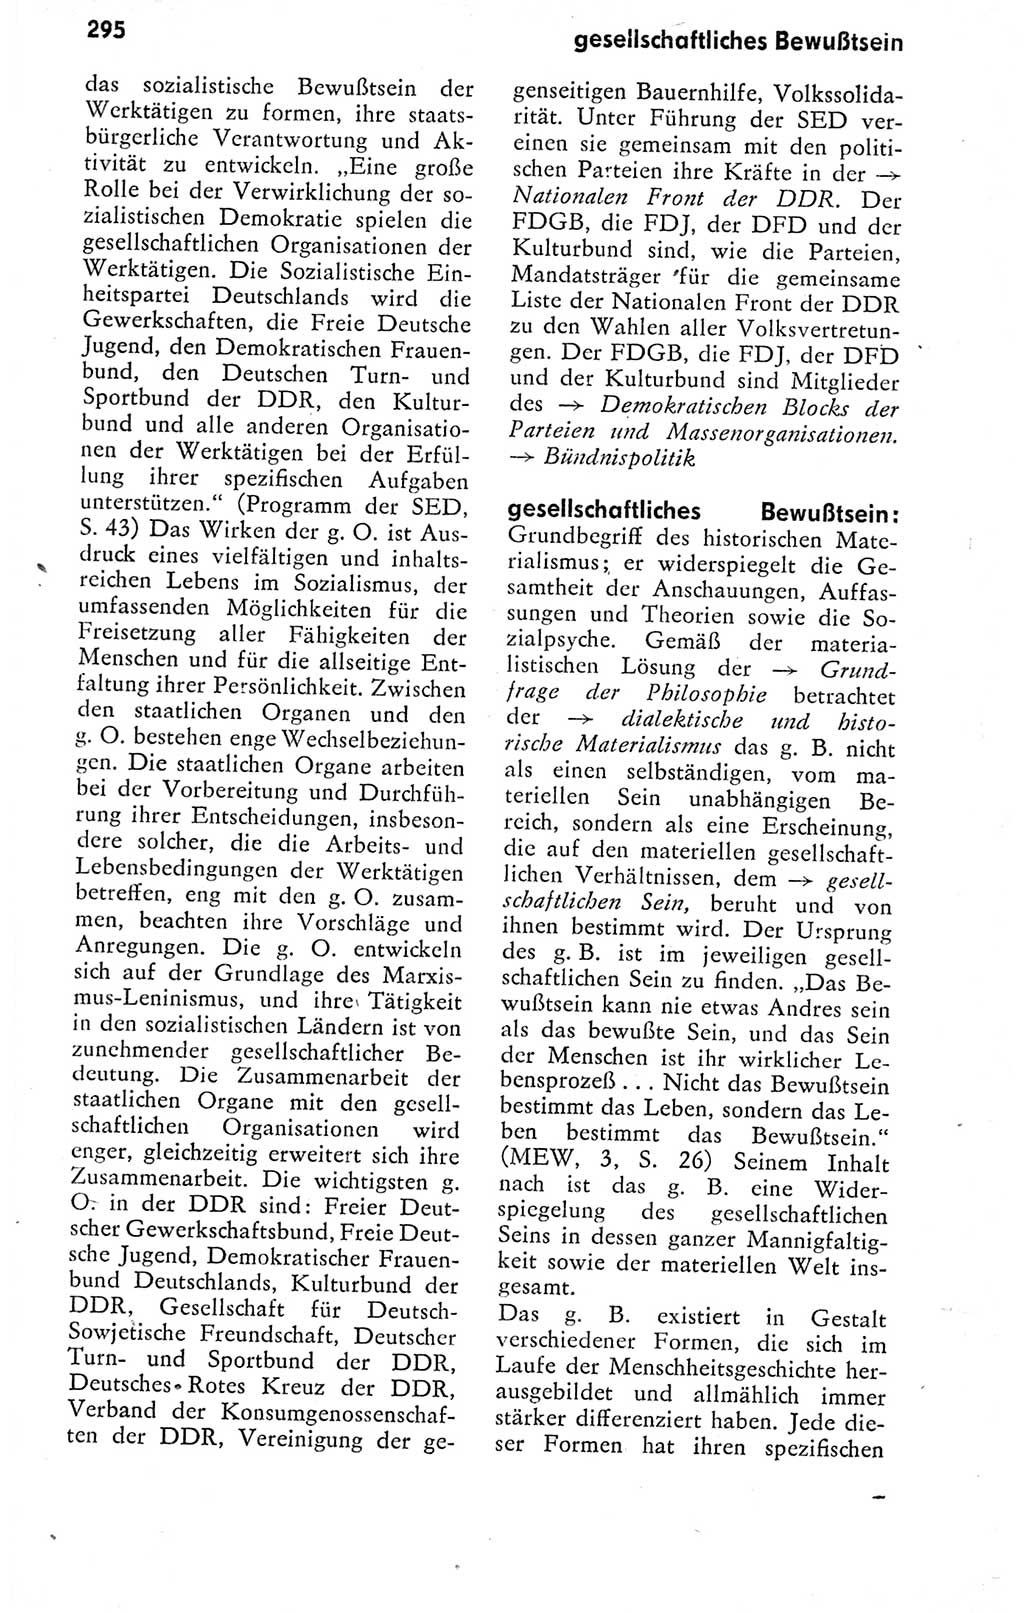 Kleines politisches Wörterbuch [Deutsche Demokratische Republik (DDR)] 1978, Seite 295 (Kl. pol. Wb. DDR 1978, S. 295)